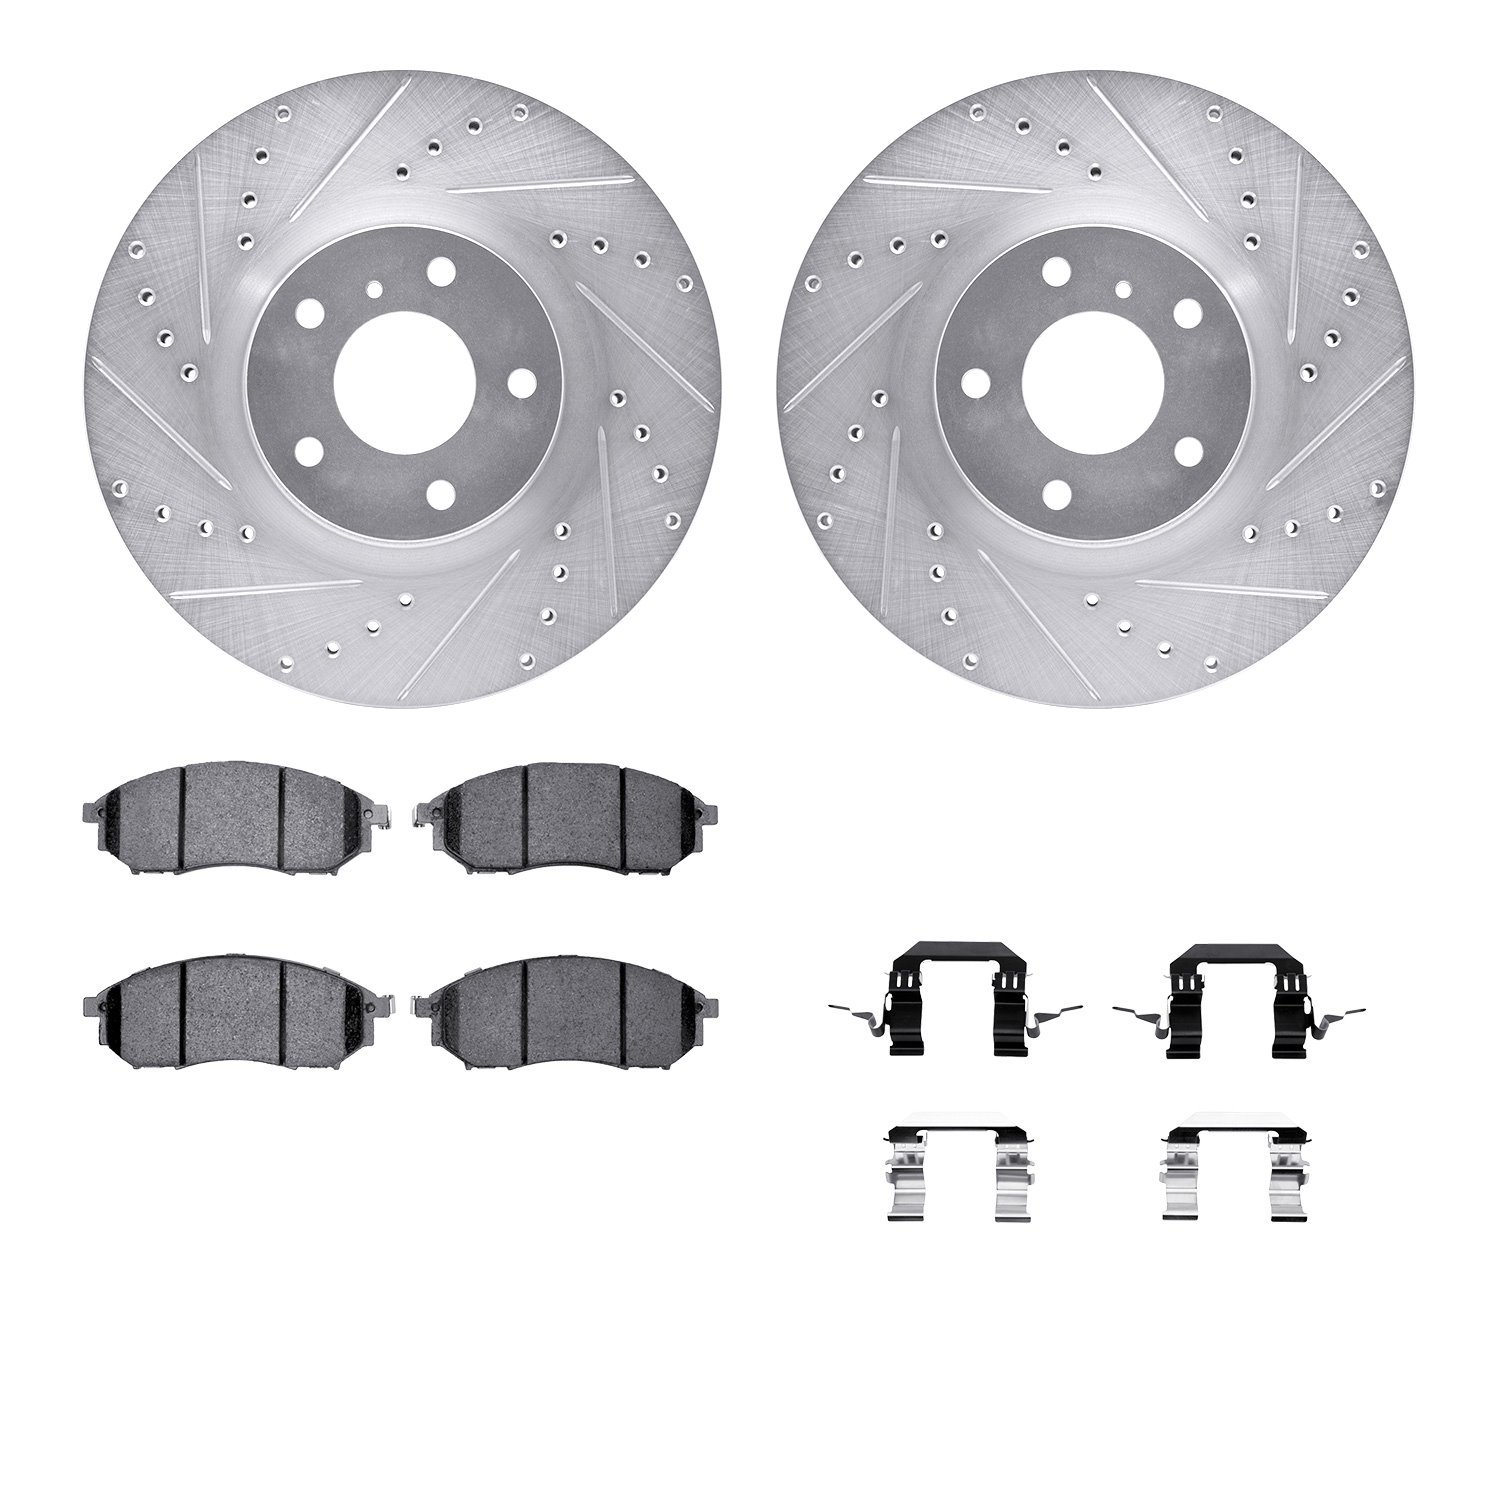 7612-67002 Drilled/Slotted Brake Rotors w/5000 Euro Ceramic Brake Pads Kit & Hardware [Silver], 2005-2020 Infiniti/Nissan, Posit